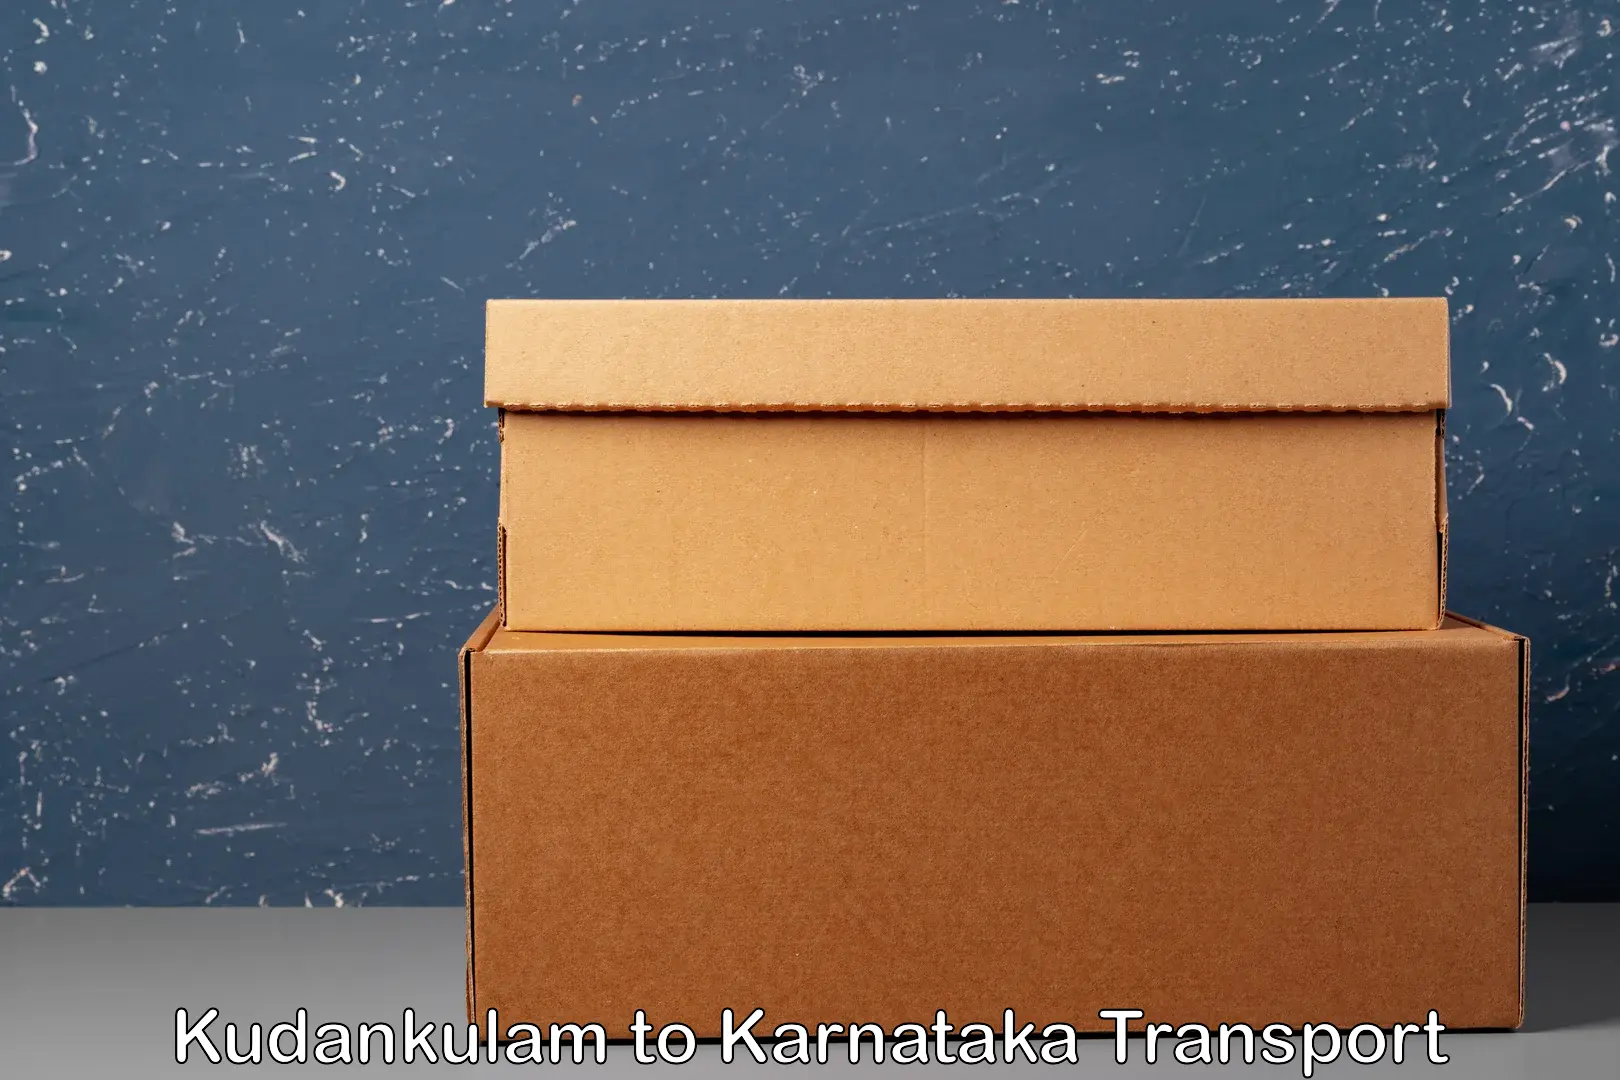 Truck transport companies in India Kudankulam to Kushalnagar